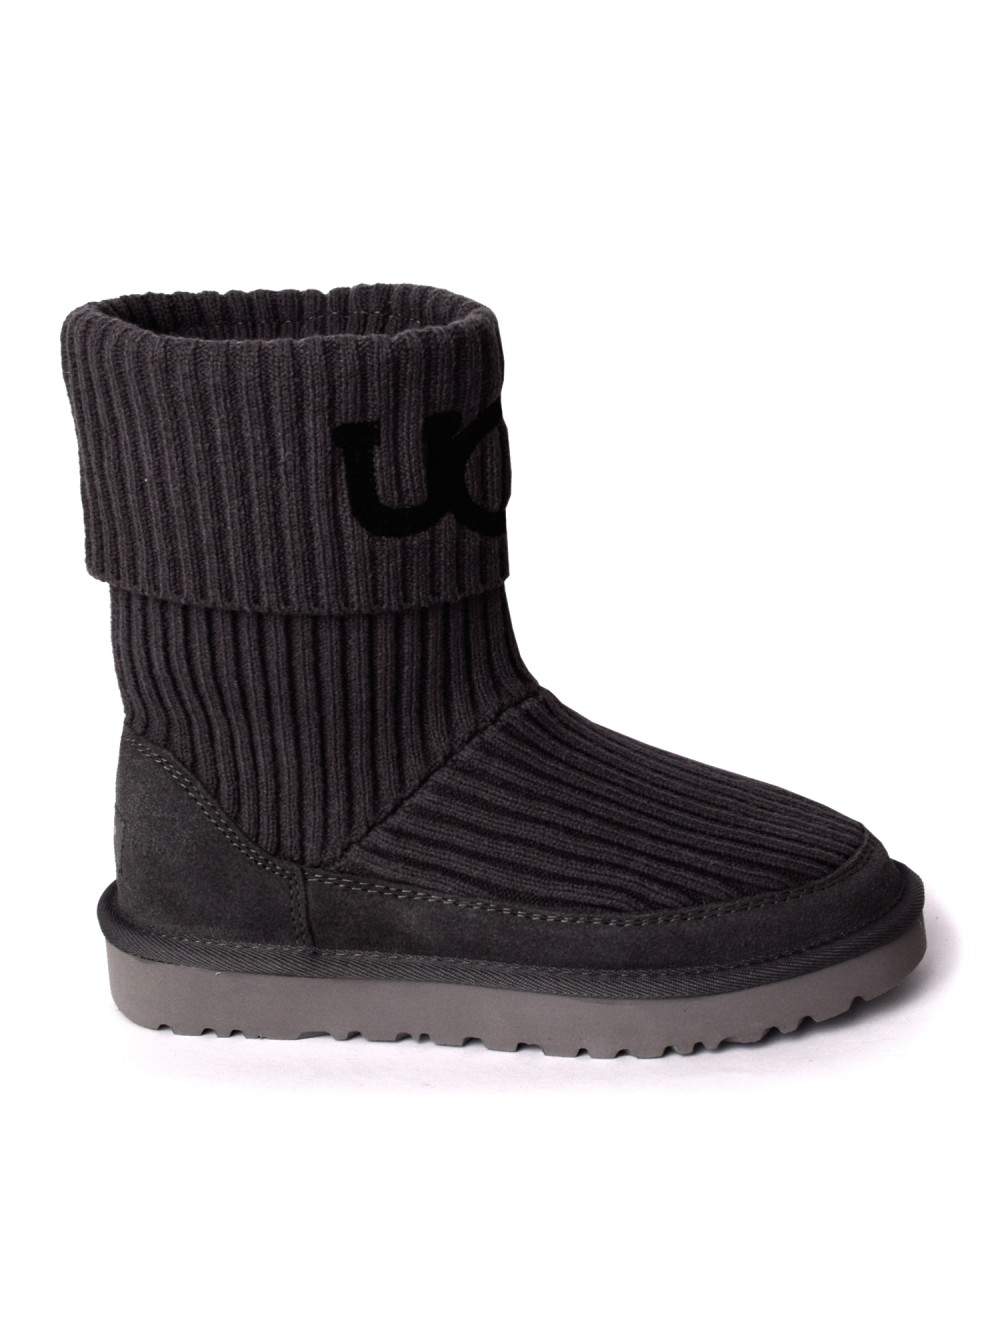 ugg classic boots black